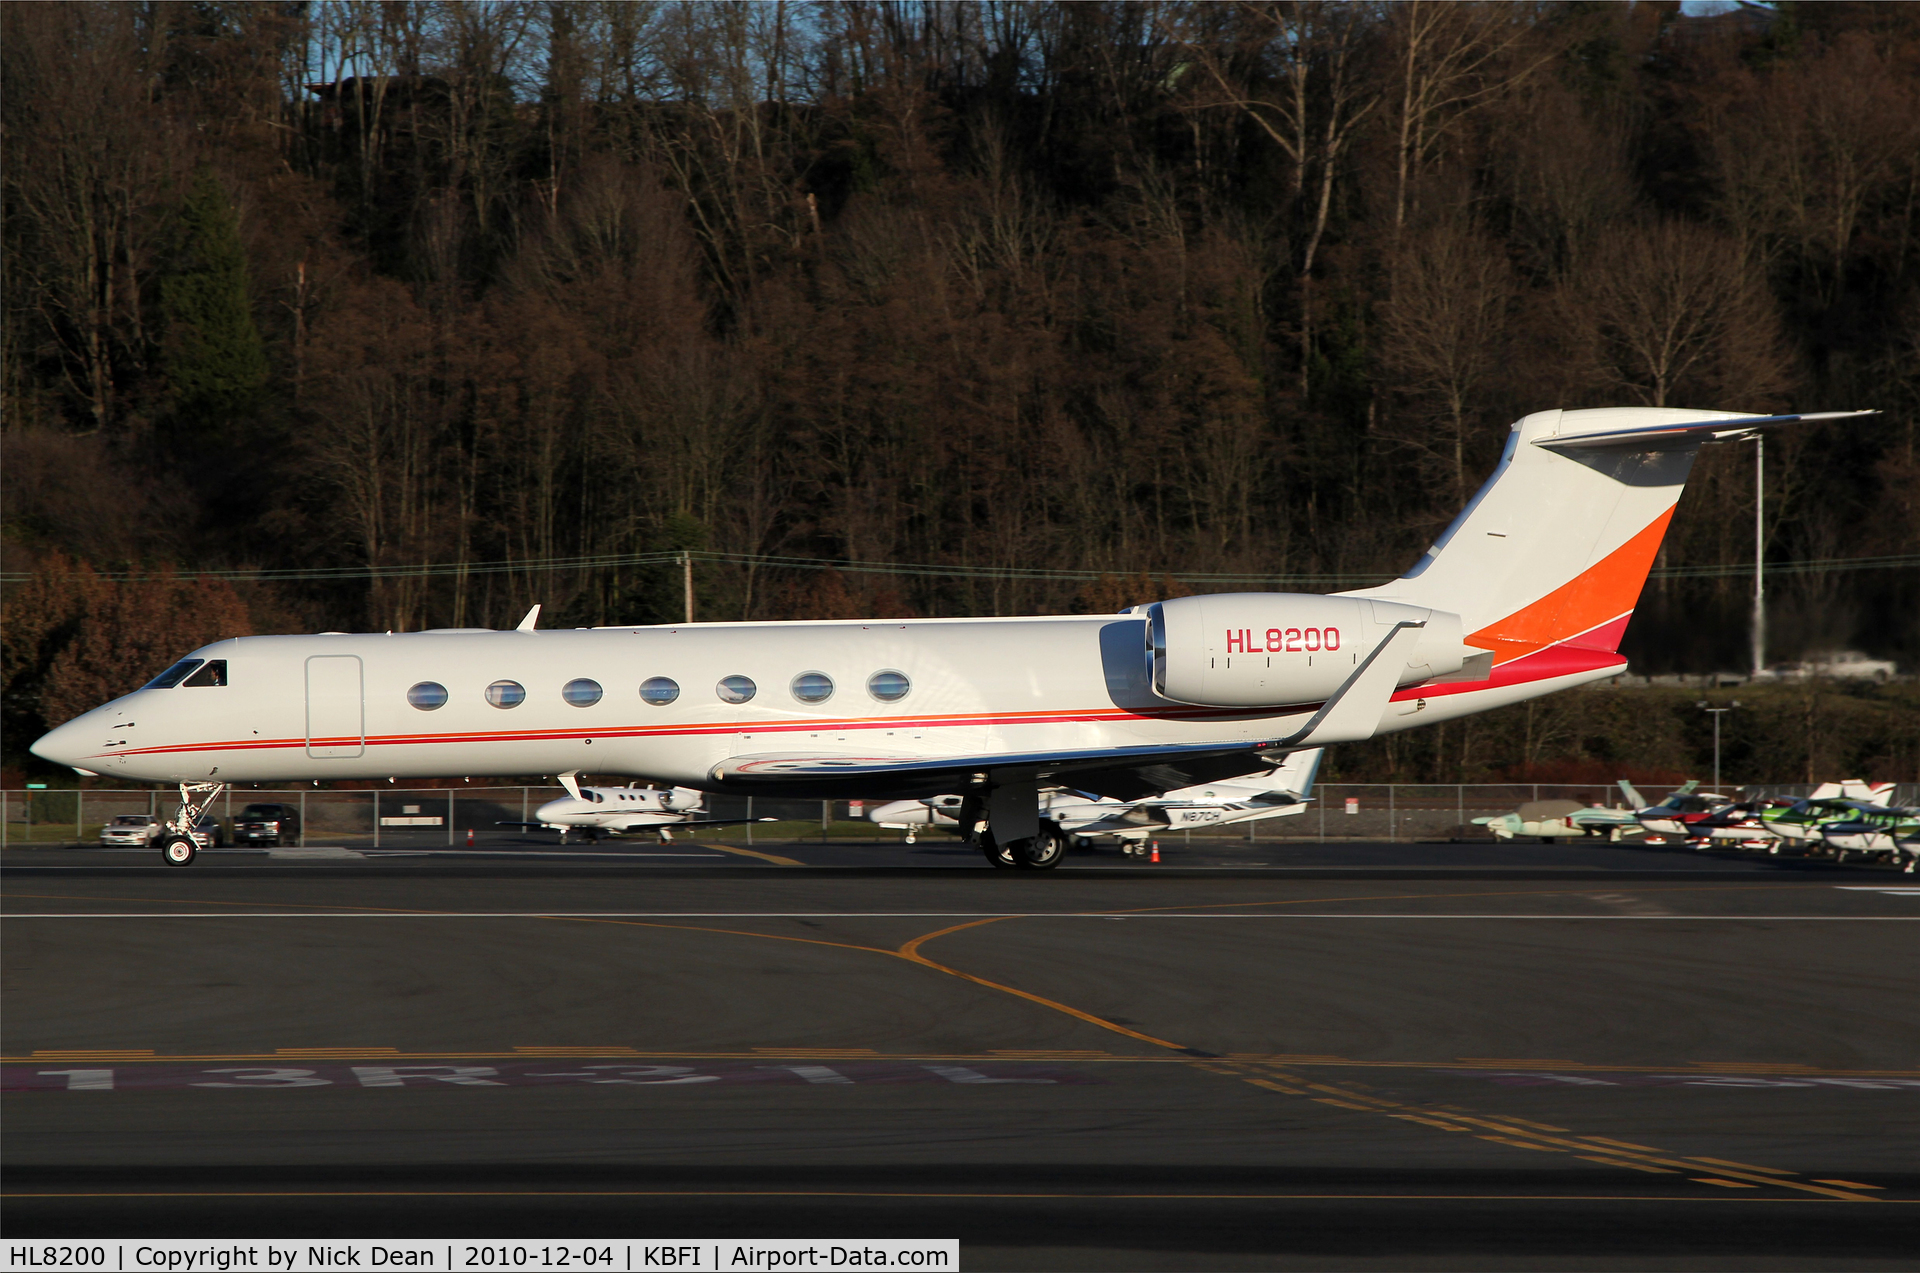 HL8200, 2009 Gulfstream Aerospace GV-SP (G550) C/N 5233, KBFI